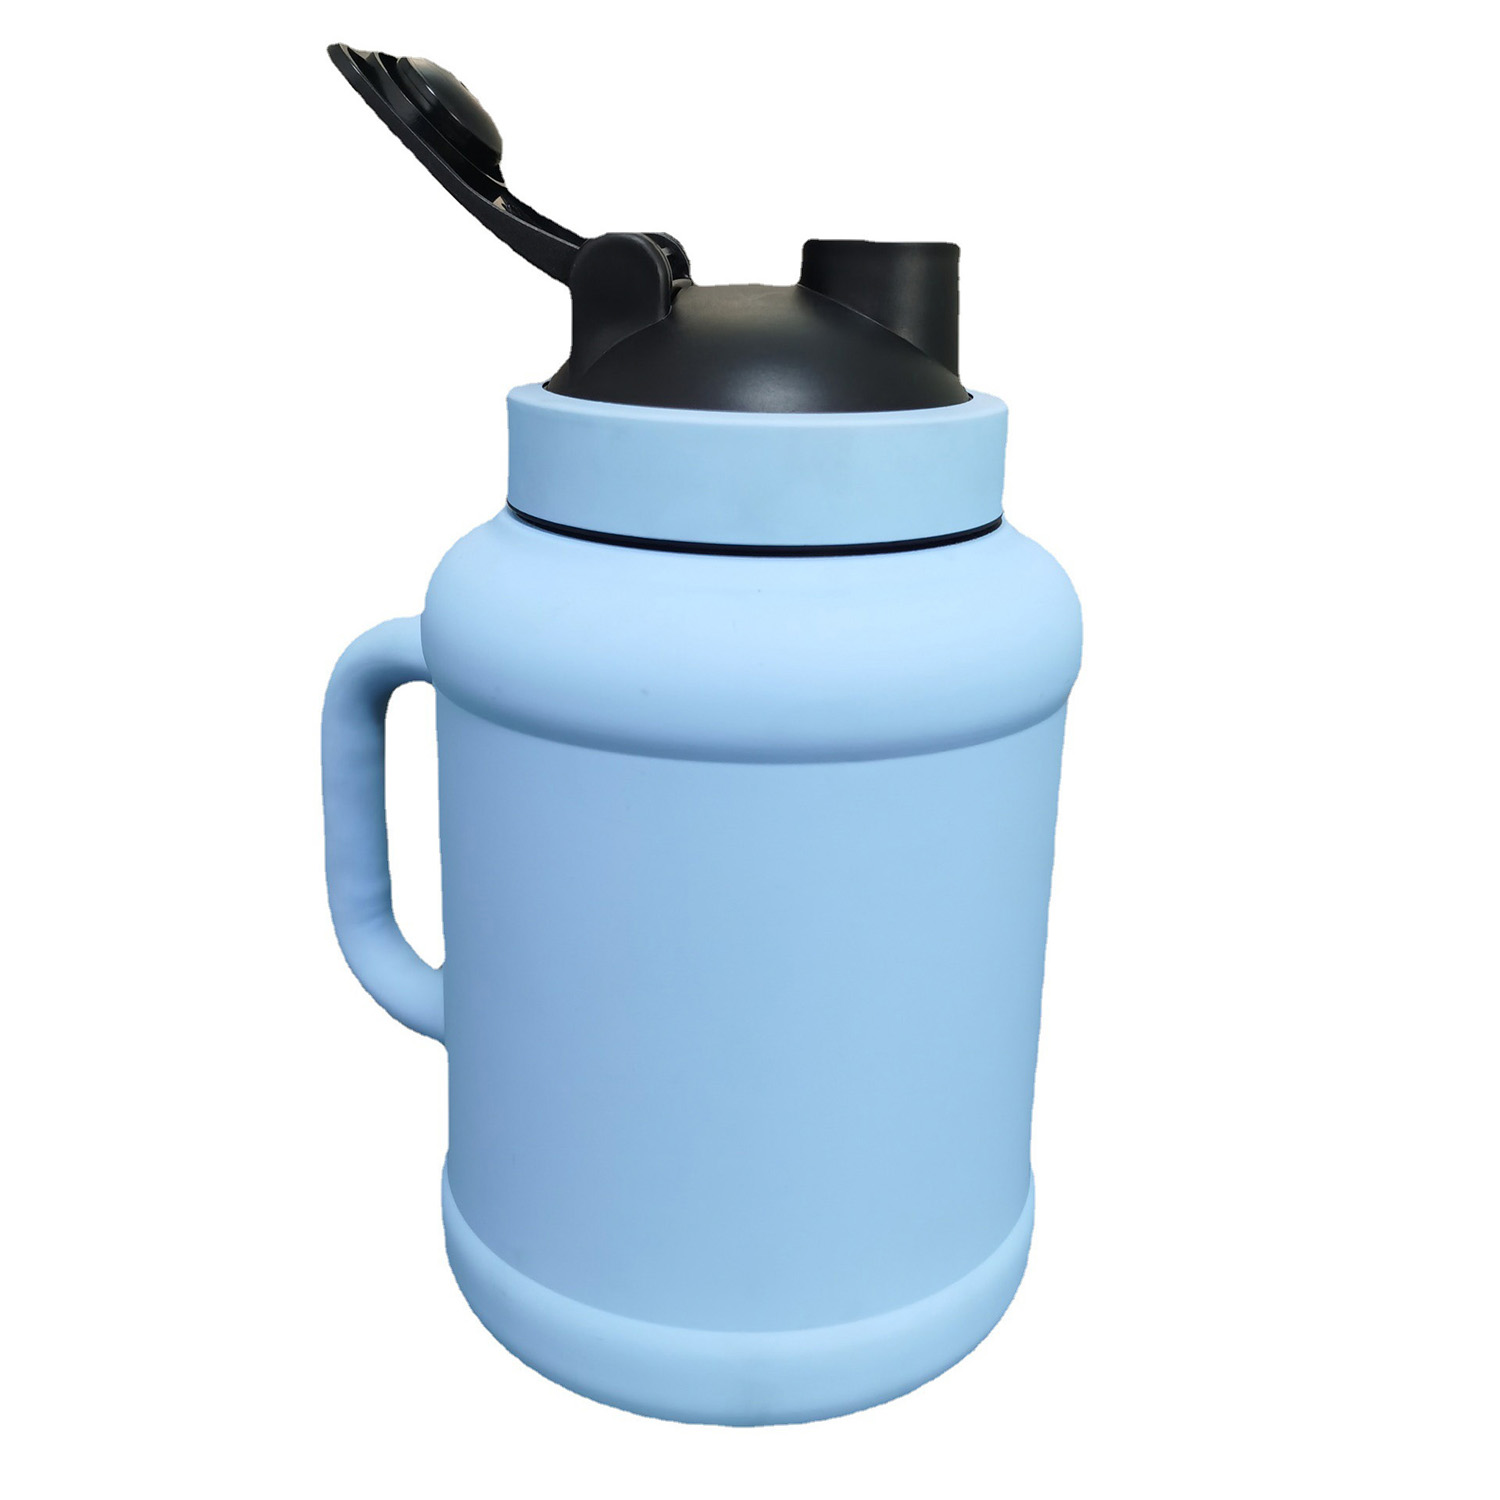 https://www.waterbottle.tech/wp-content/uploads/2022/03/Water-Jug-1.5L-2.5L-Big-Water-Bottle-50OZ-85oz-Sports-Gallon-Capacity-s11150051-1.jpg